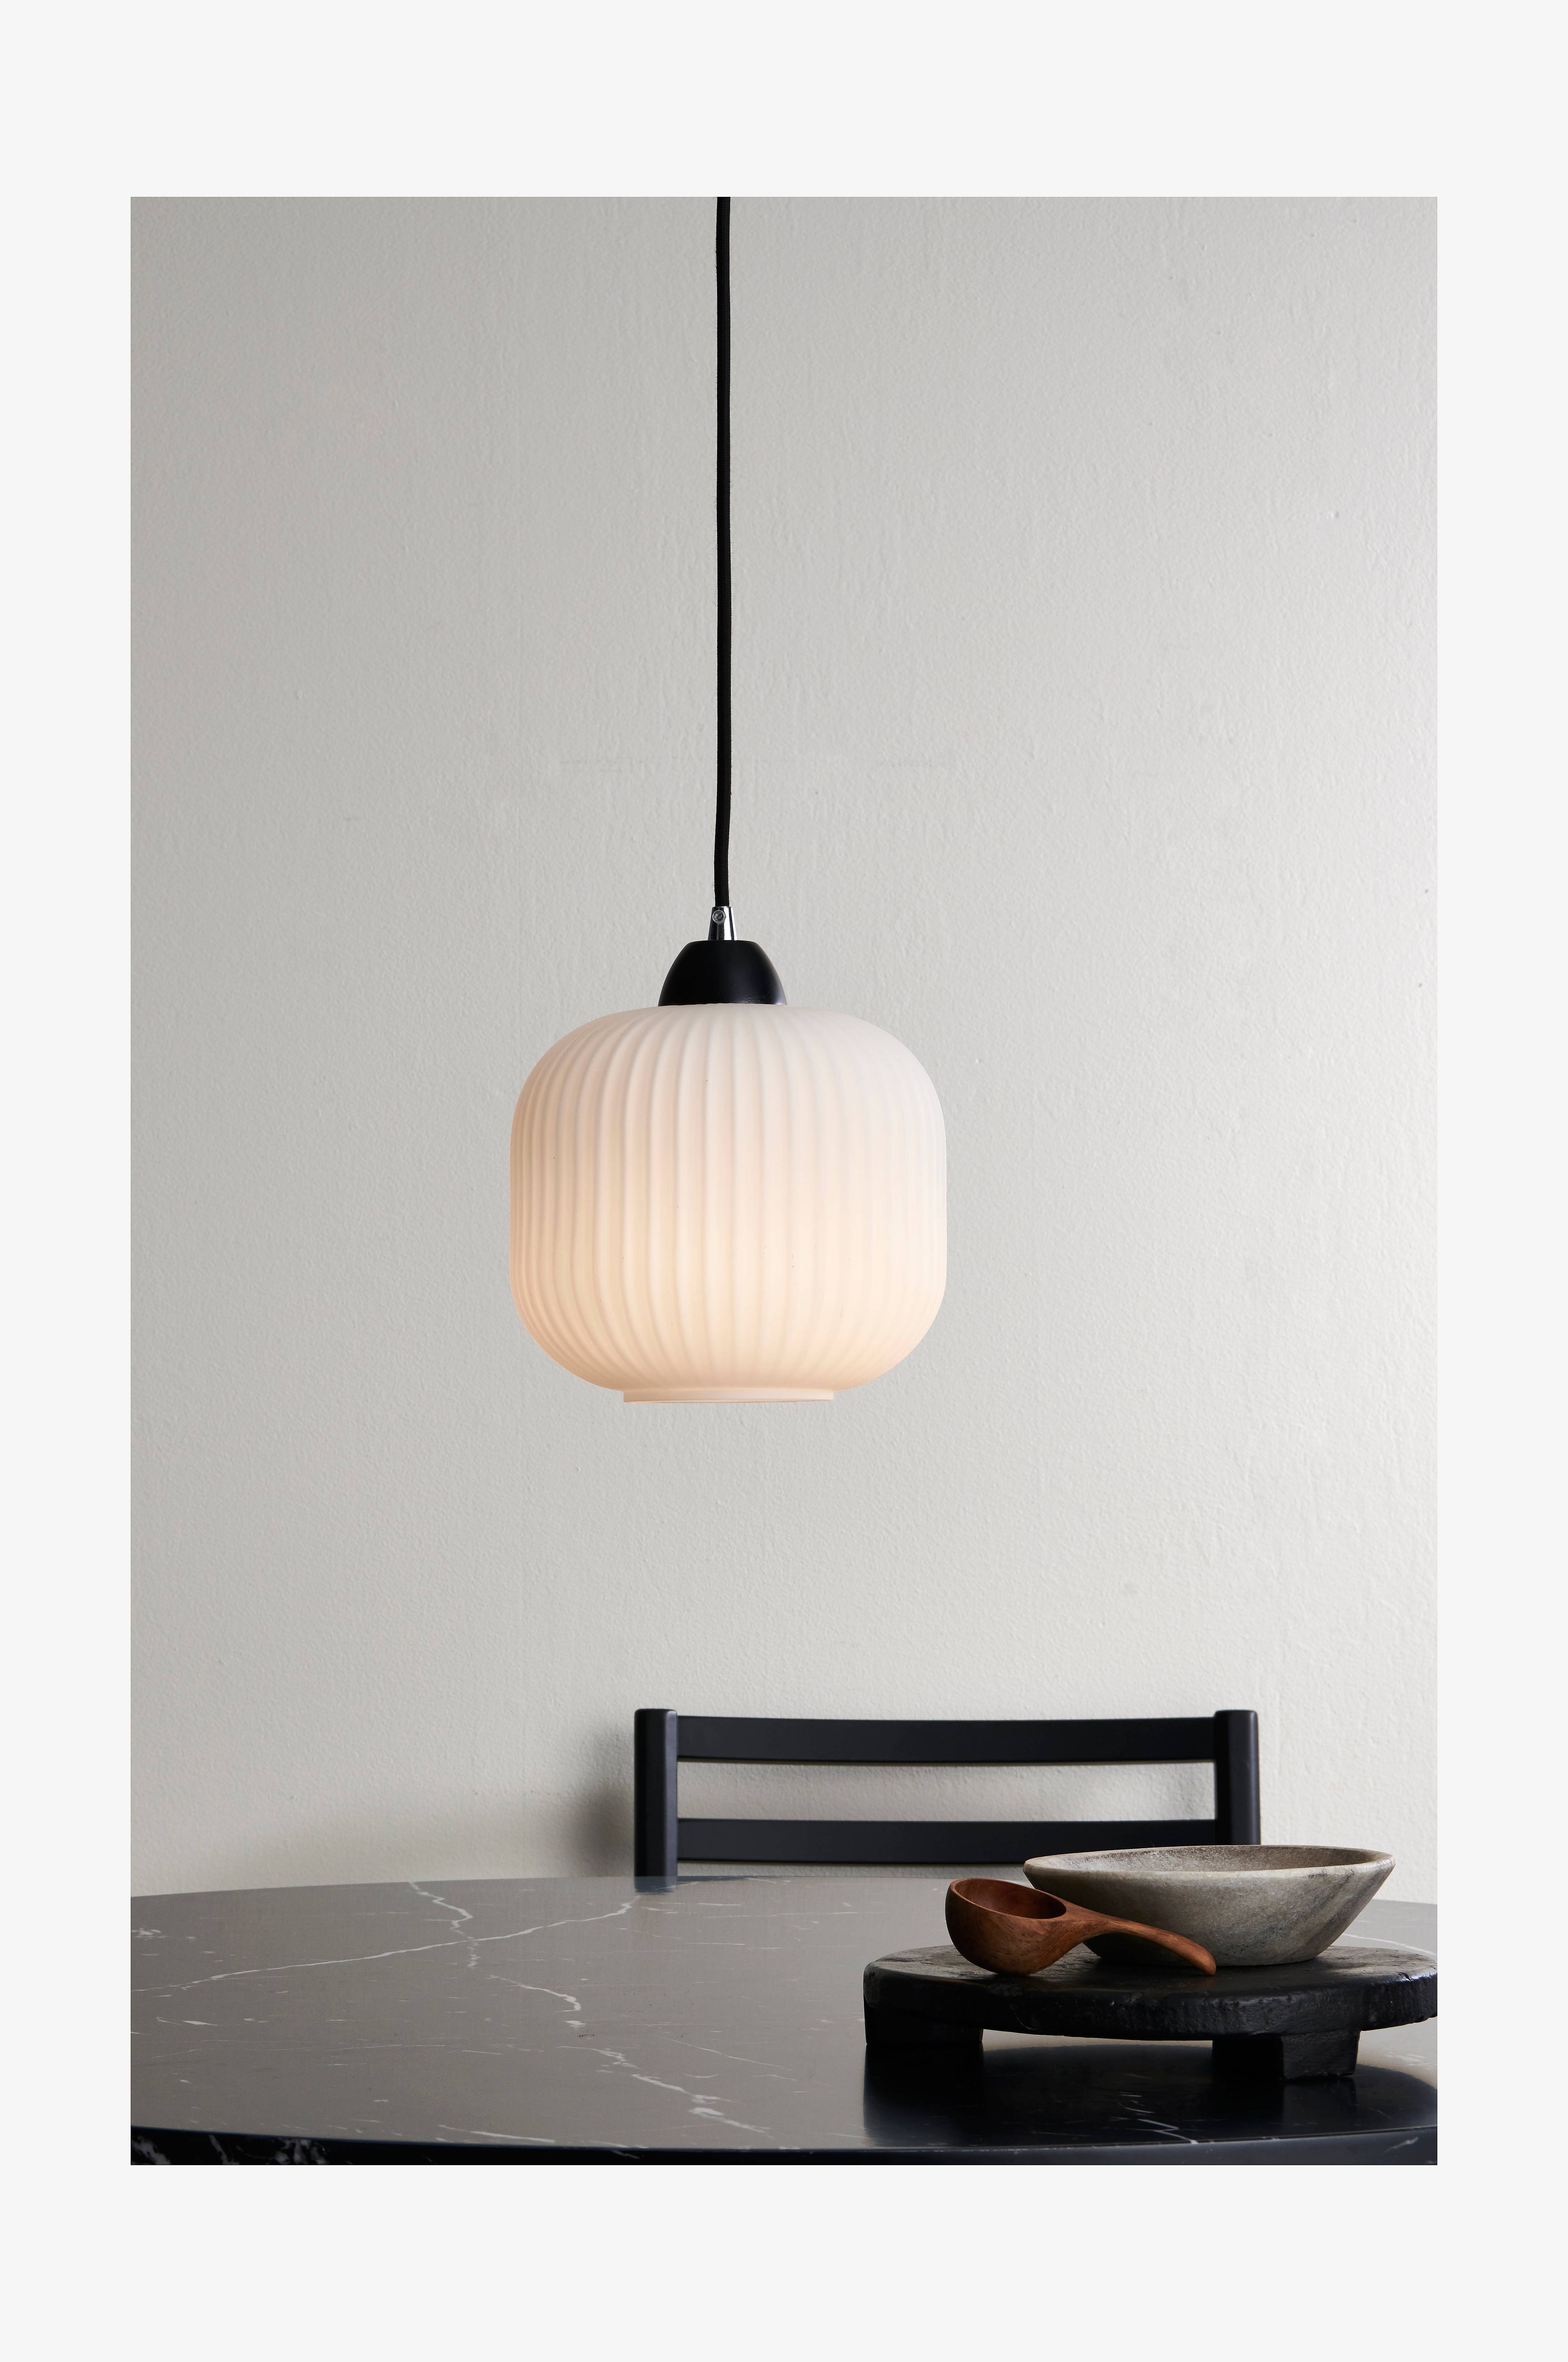 Belysning & lamper i modeller - Shop online Ellos.dk